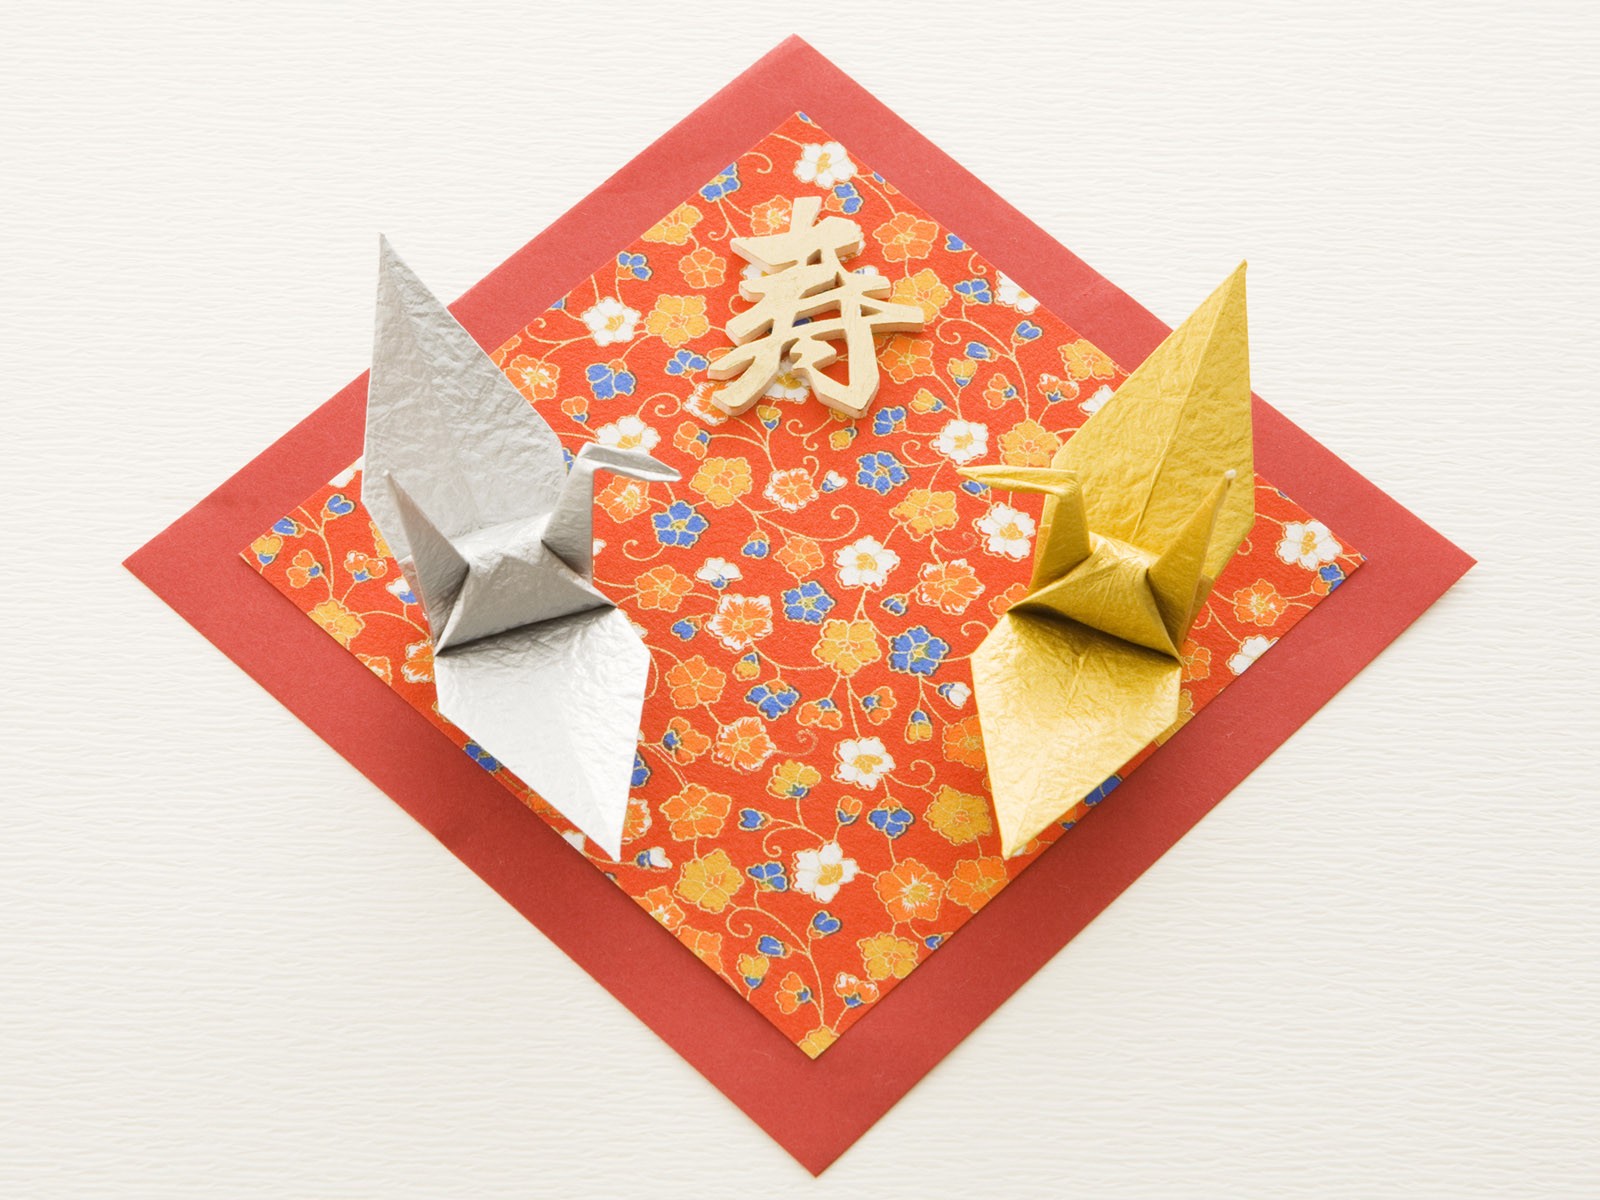 Fondos de año nuevo japonés Cultura #31 - 1600x1200